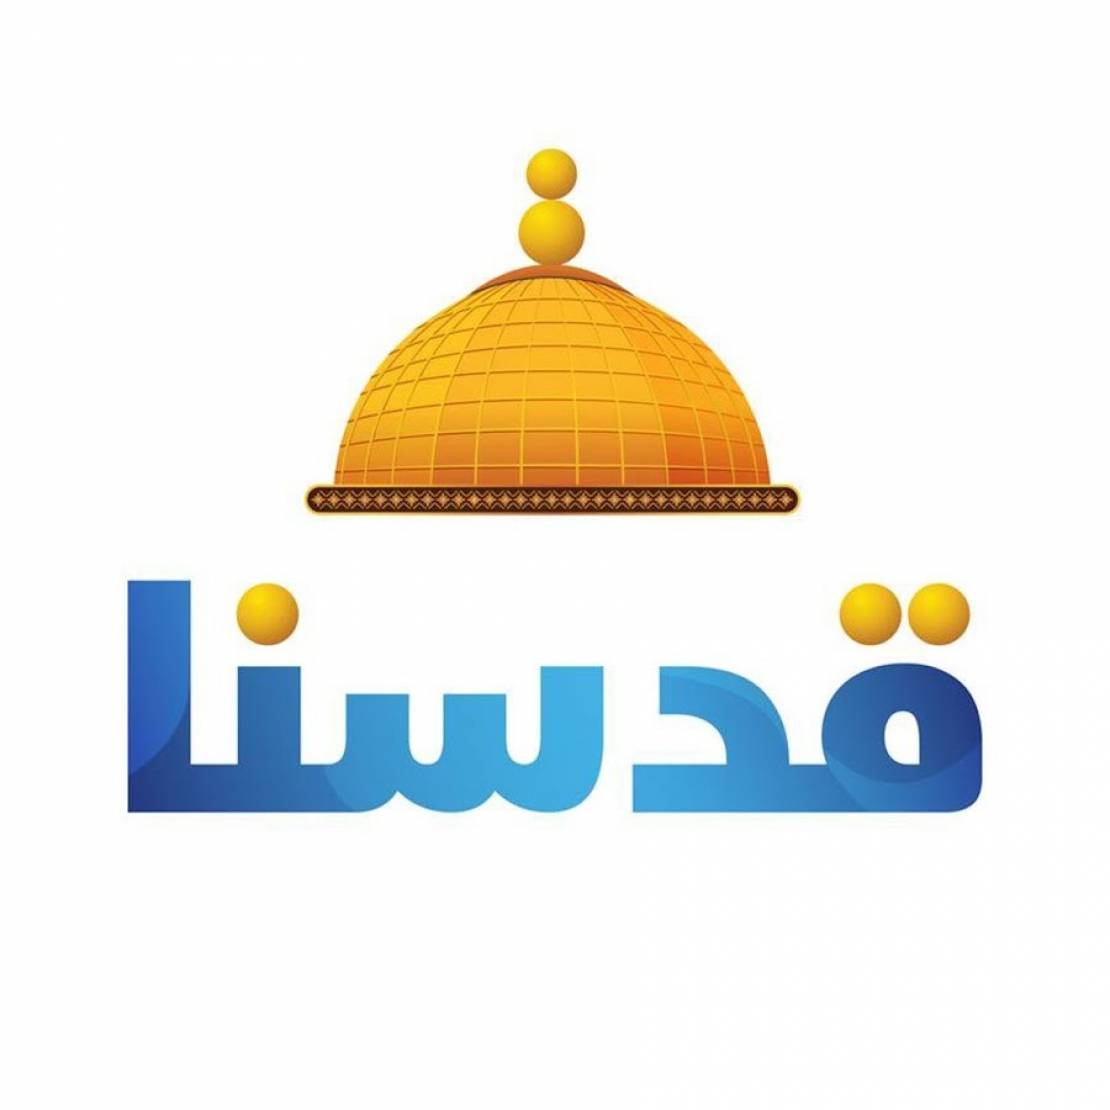 "قدسنا" إطلاق إذاعة مرئية فضائية فلسطينية لدعم المحتوى الفلسطيني